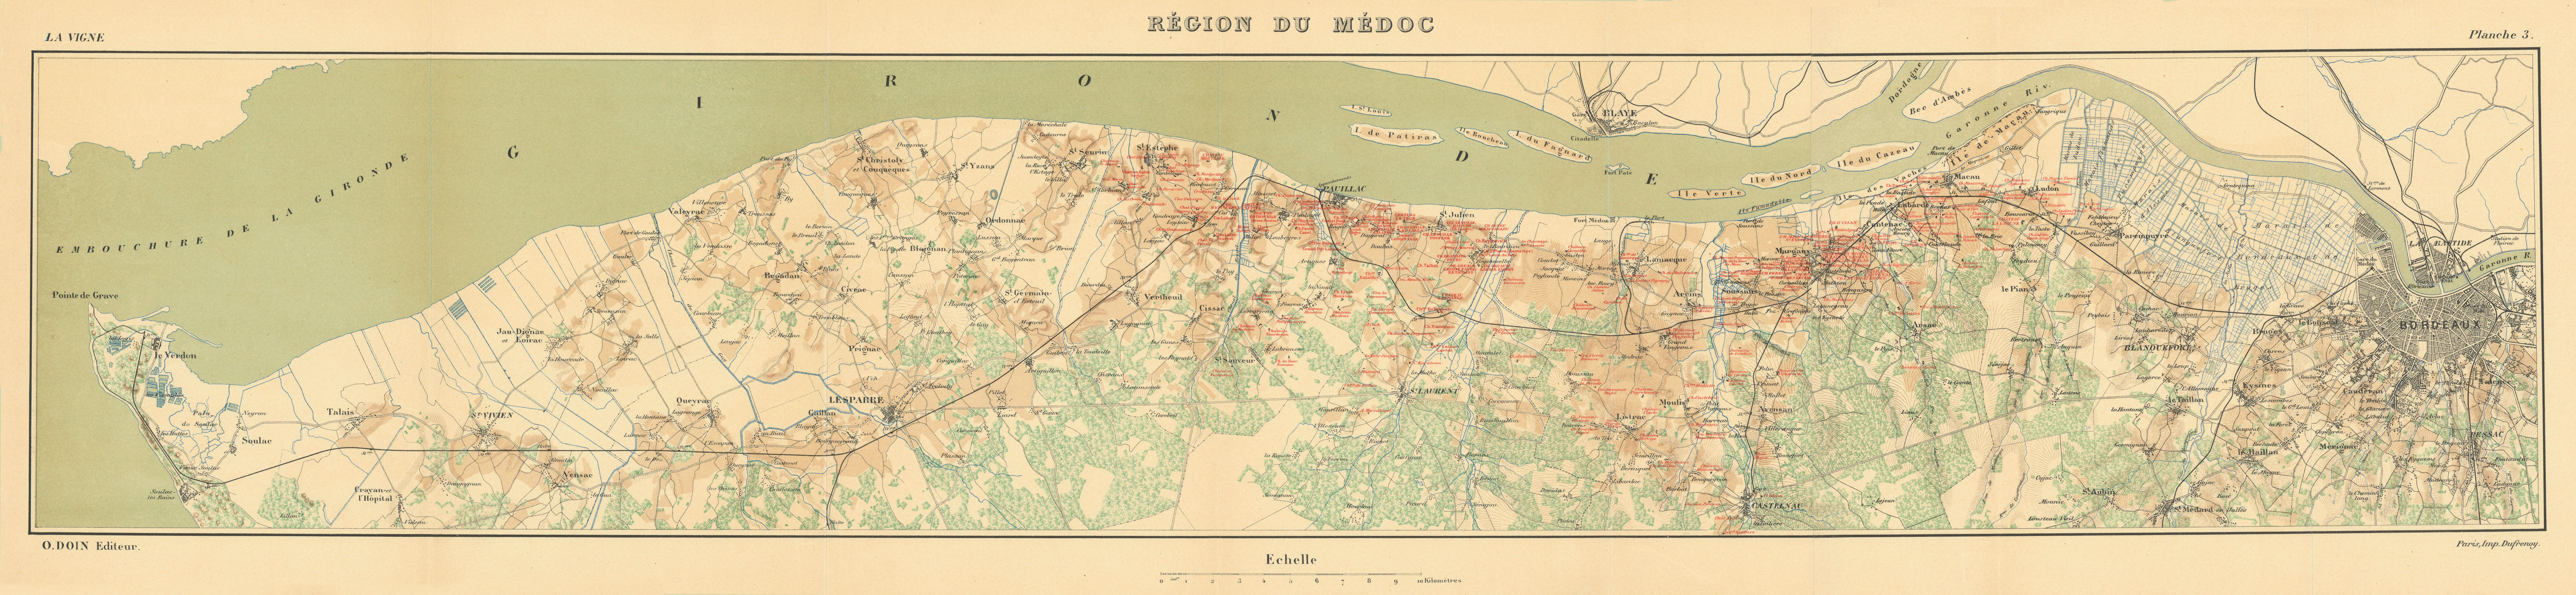 Associate Product Région du Médoc. Bordeaux wine map. Grands crus. HAUSERMANN 1901 old